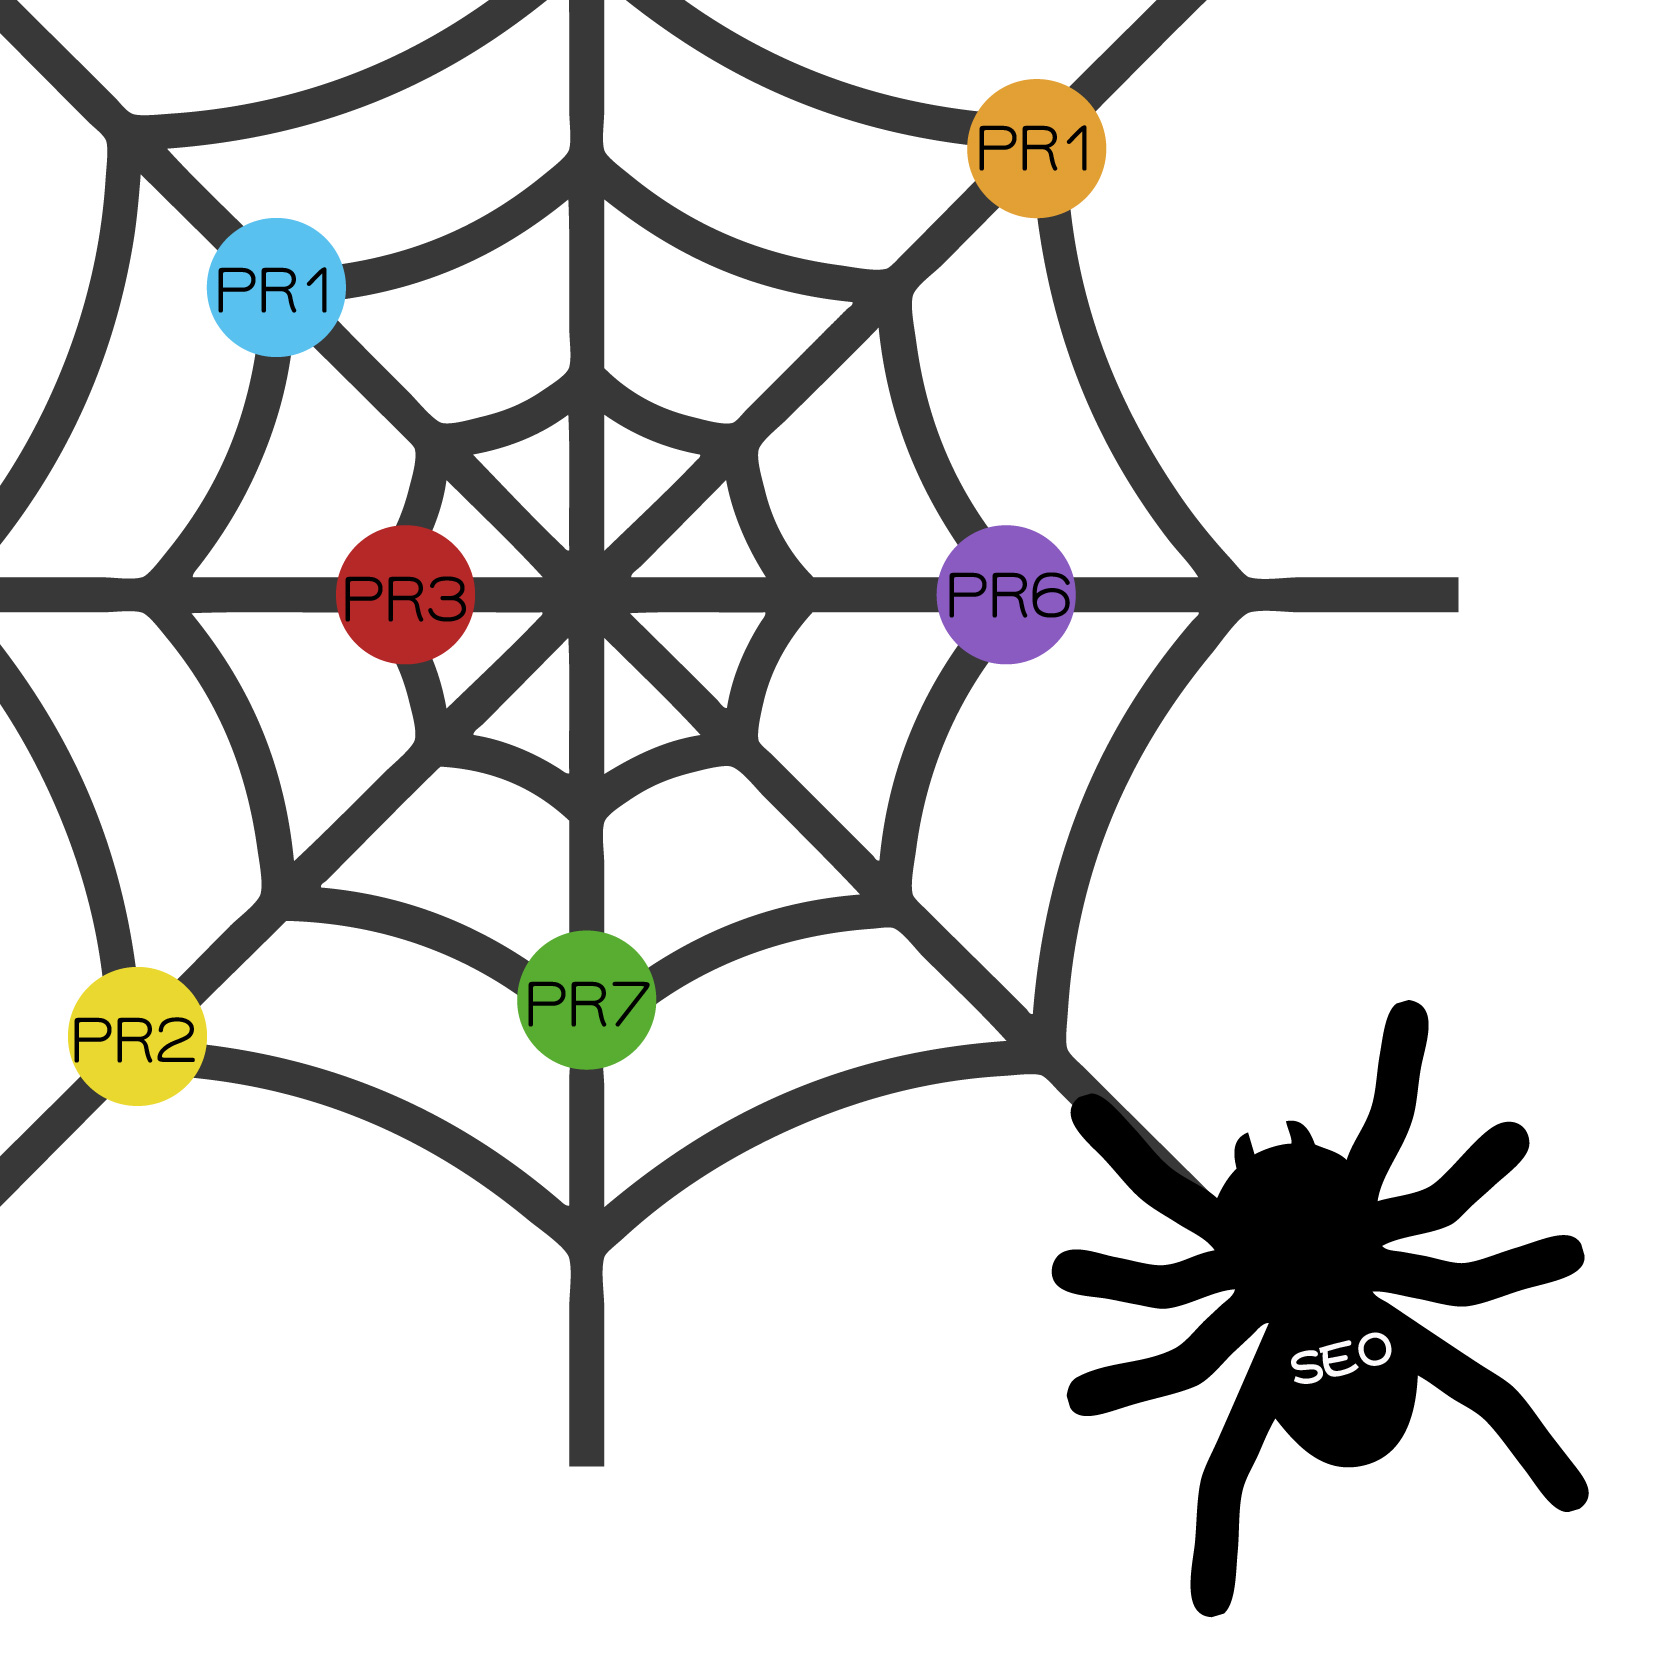 搜尋引擎蜘蛛與SEO的關聯性